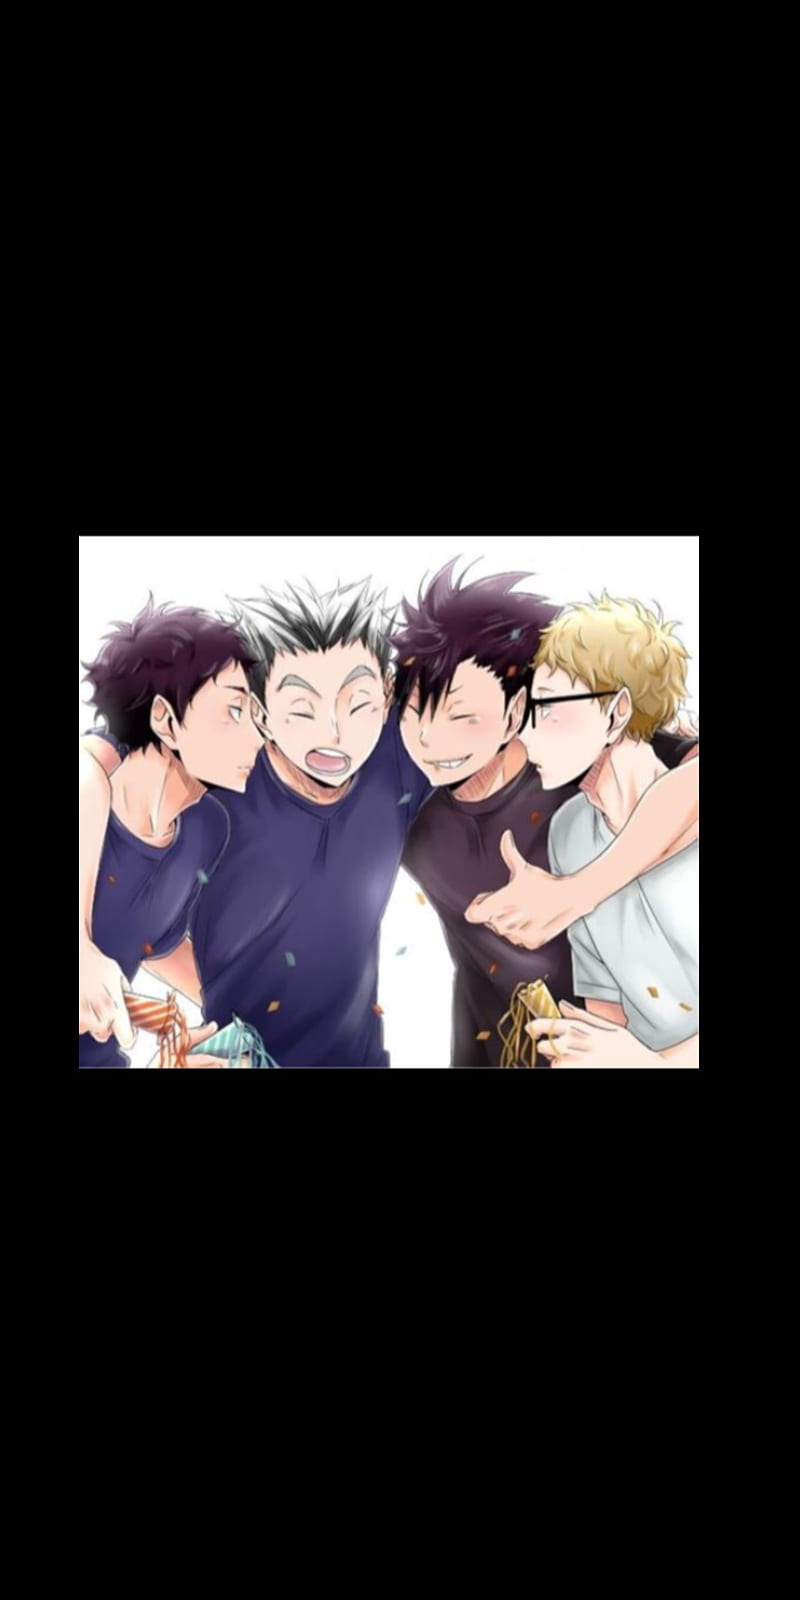 The haikyuu bros, akaashi, akashi, anime, bokuto, haikyuu, kuroo, tsuki, tsukishima, HD phone wallpaper